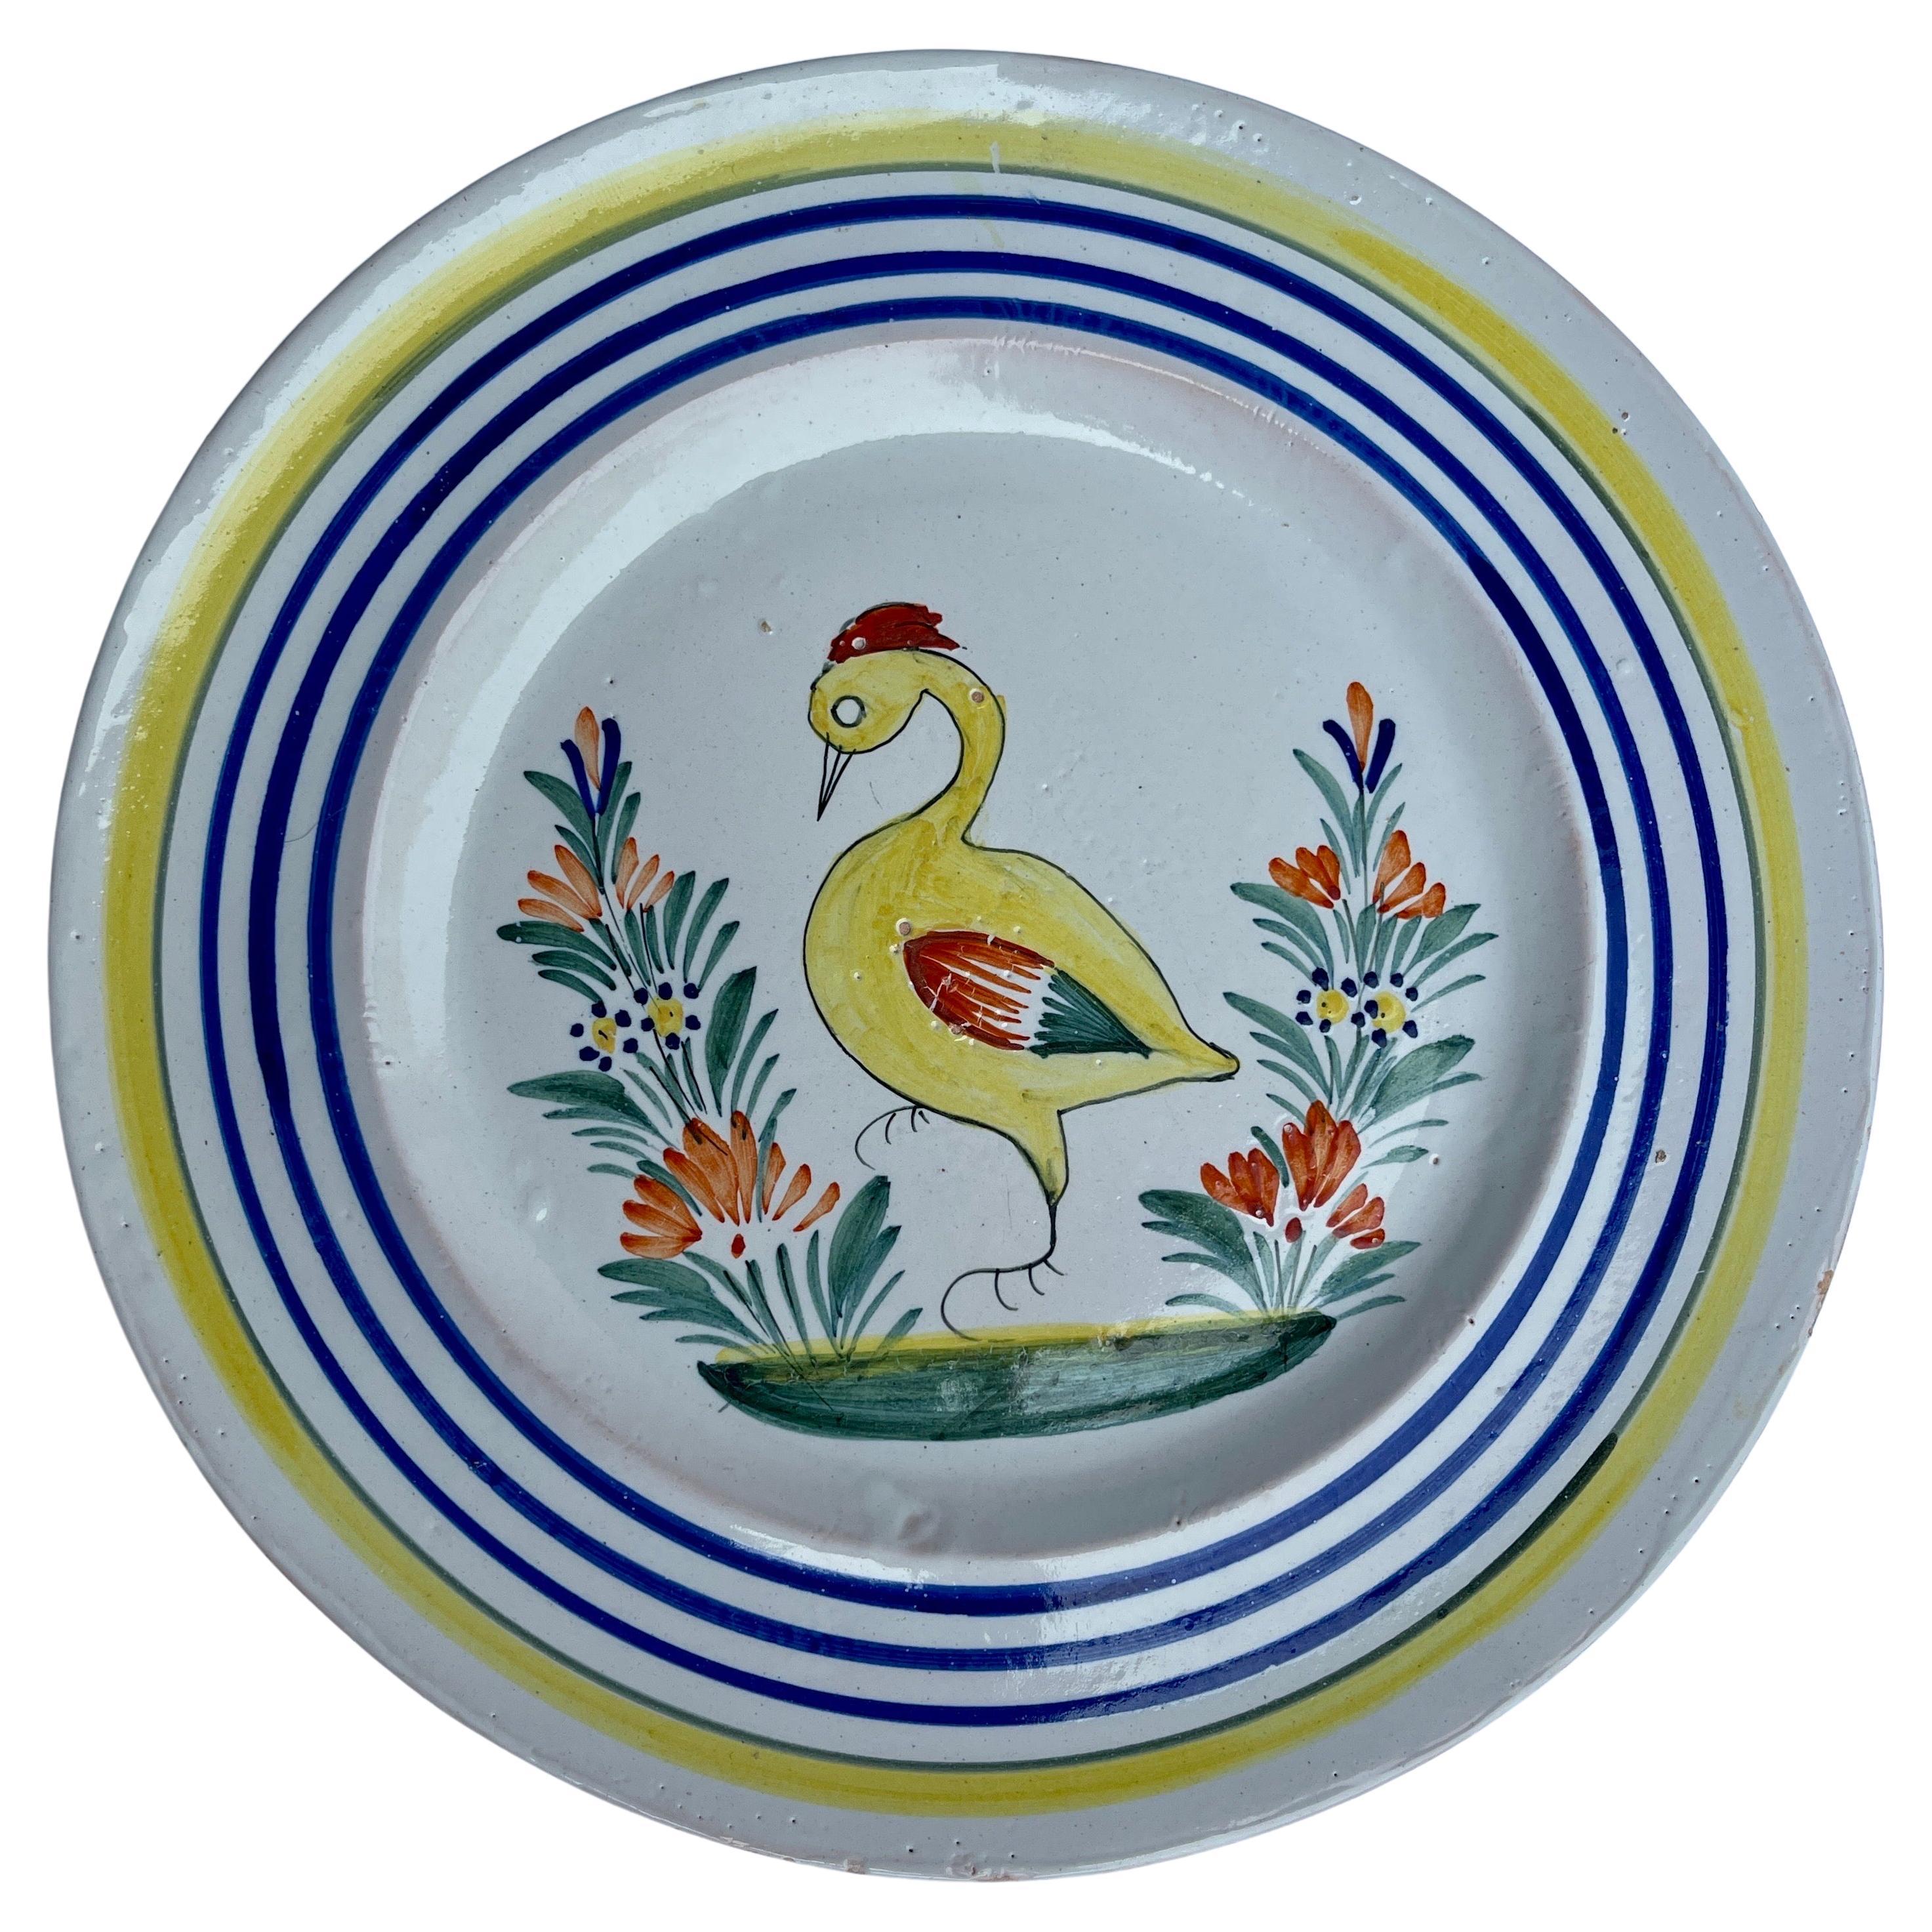 Assiette à canard Quimper en faïence française peinte à la main dans les années 1930

Exceptionnelle assiette Quimper de France avec un canard au centre. Le bord de la pièce est accentué par une bordure colorée avec des lignes jaunes et bleues.